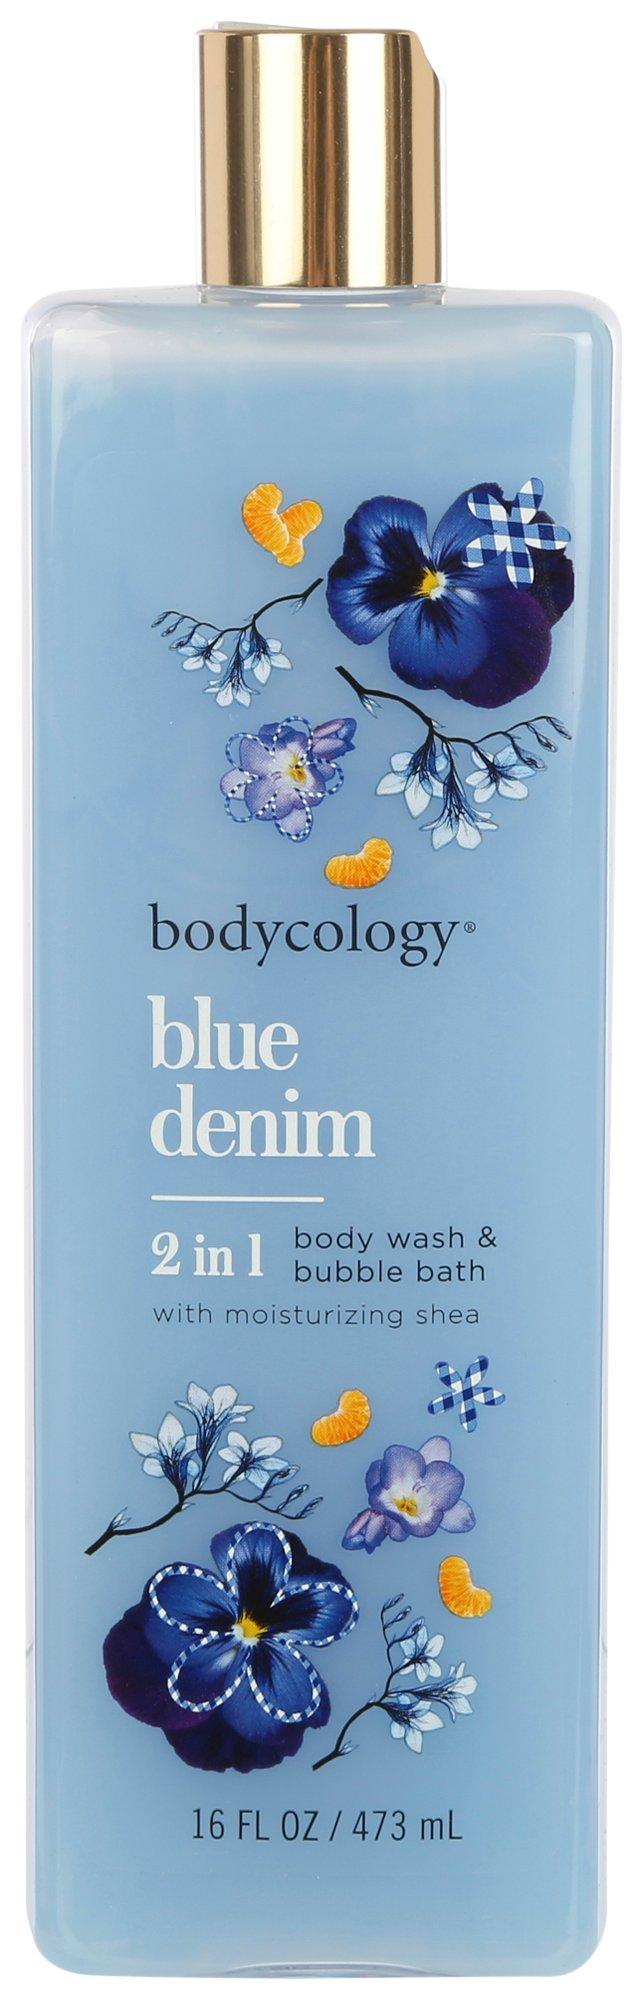 Blue Denim Body Wash & Bubble Bath